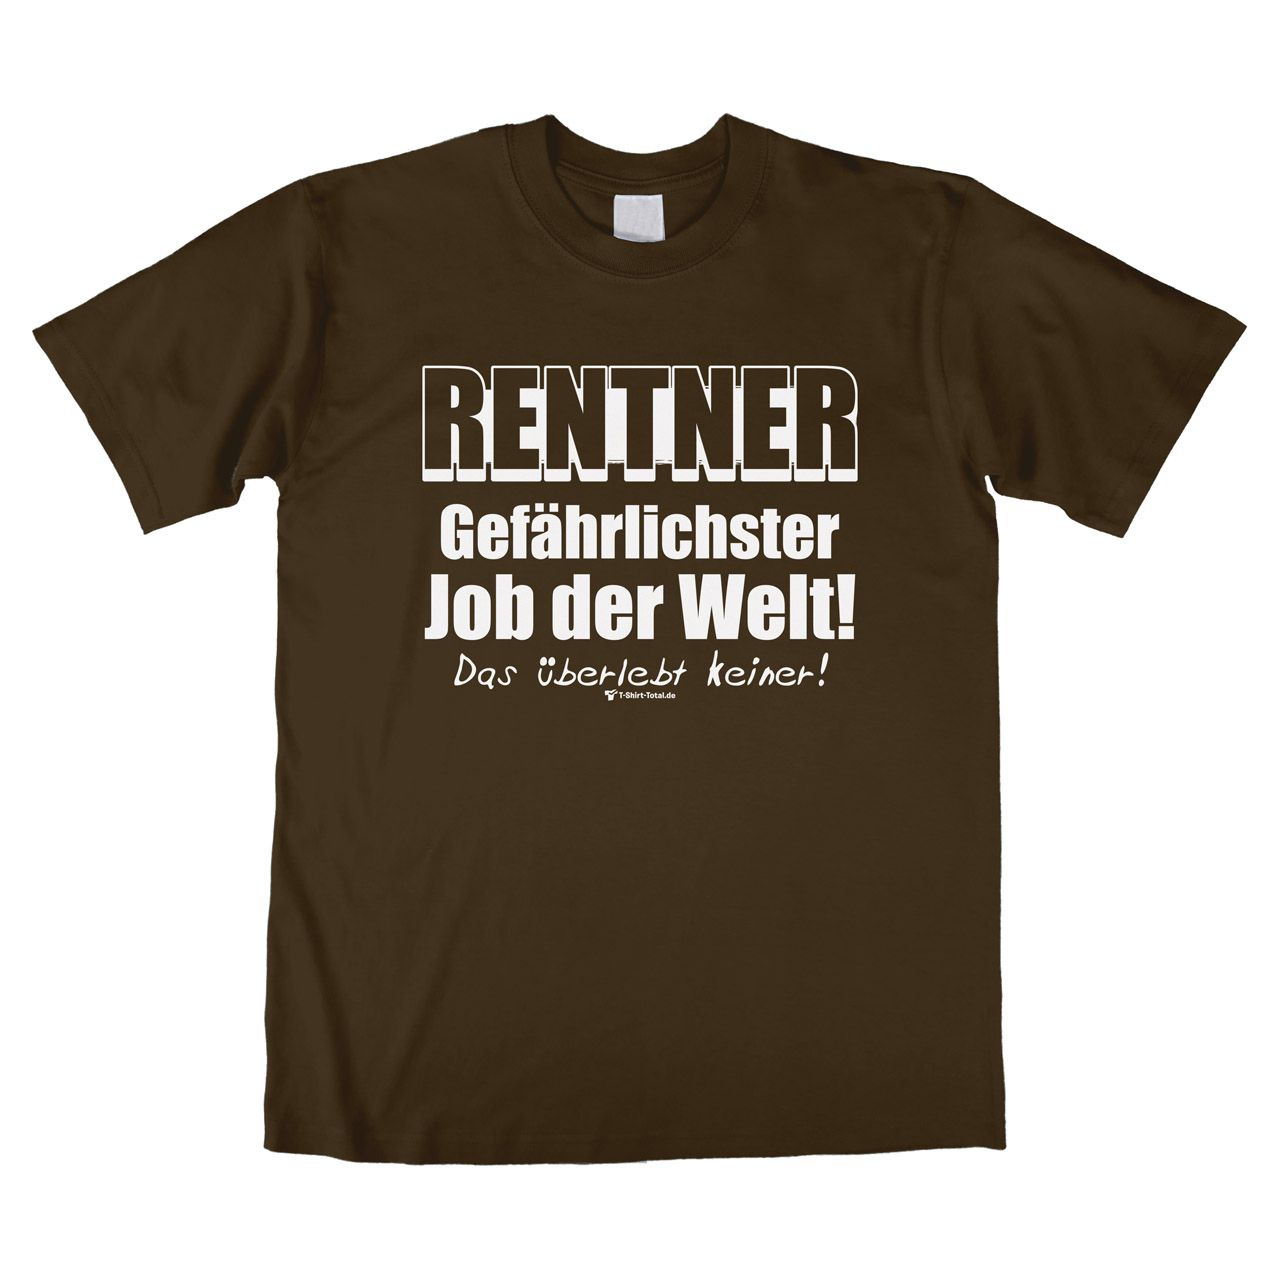 Gefährlichster Job Rentner Unisex T-Shirt braun Extra Large